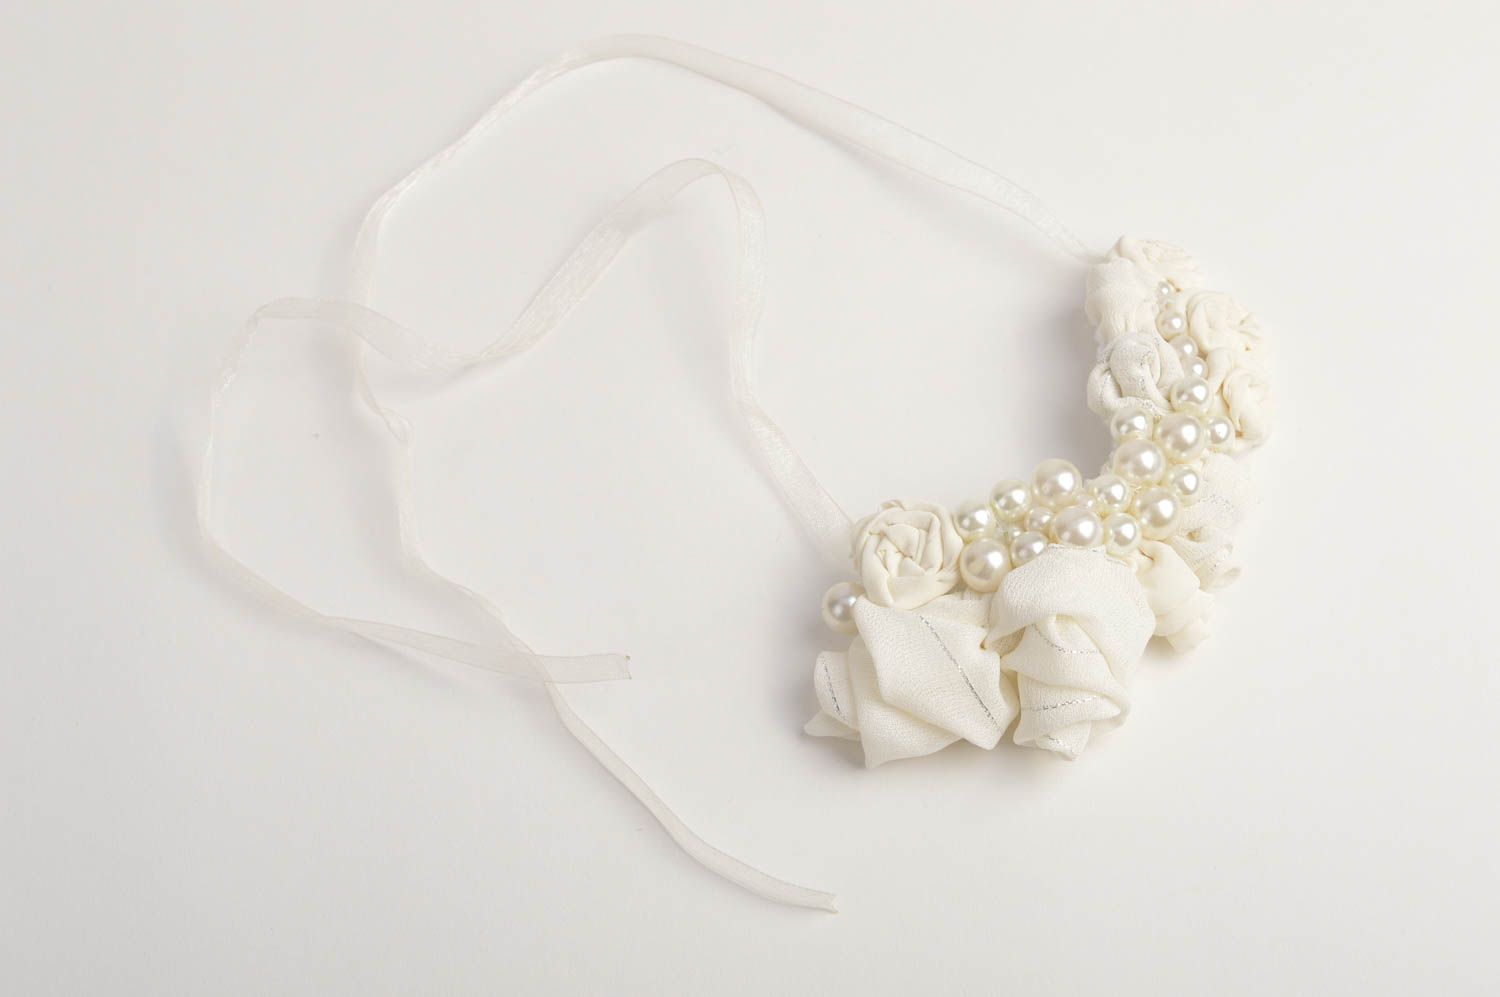 Handmade white festive jewelry stylish designer necklace elegant necklace photo 2